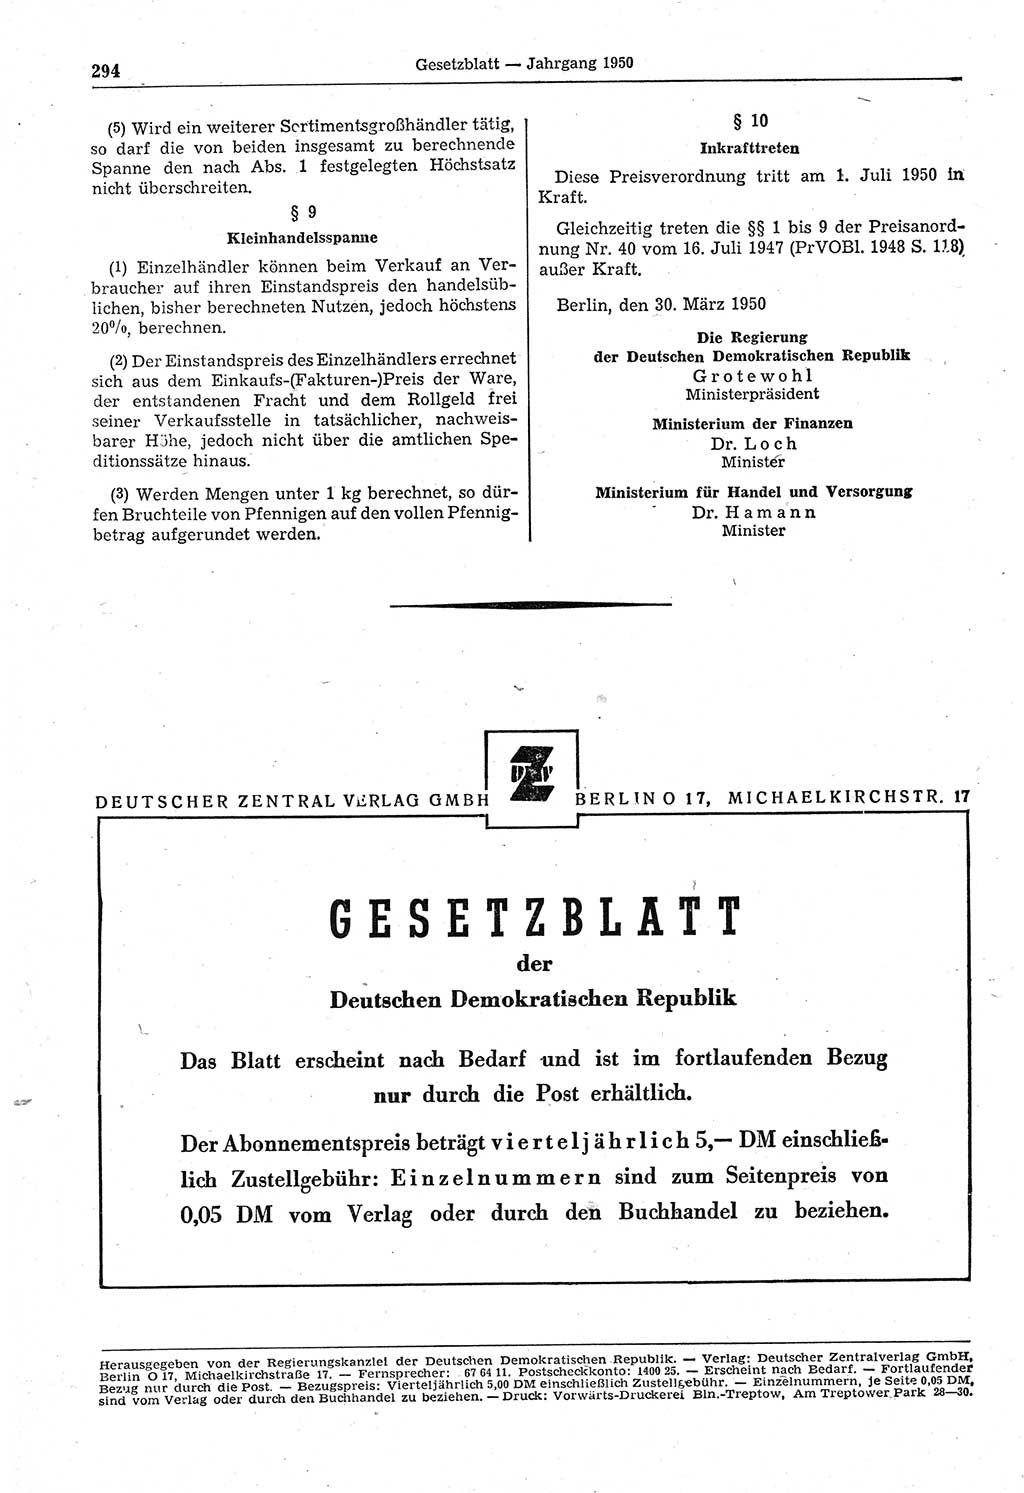 Gesetzblatt (GBl.) der Deutschen Demokratischen Republik (DDR) 1950, Seite 294 (GBl. DDR 1950, S. 294)